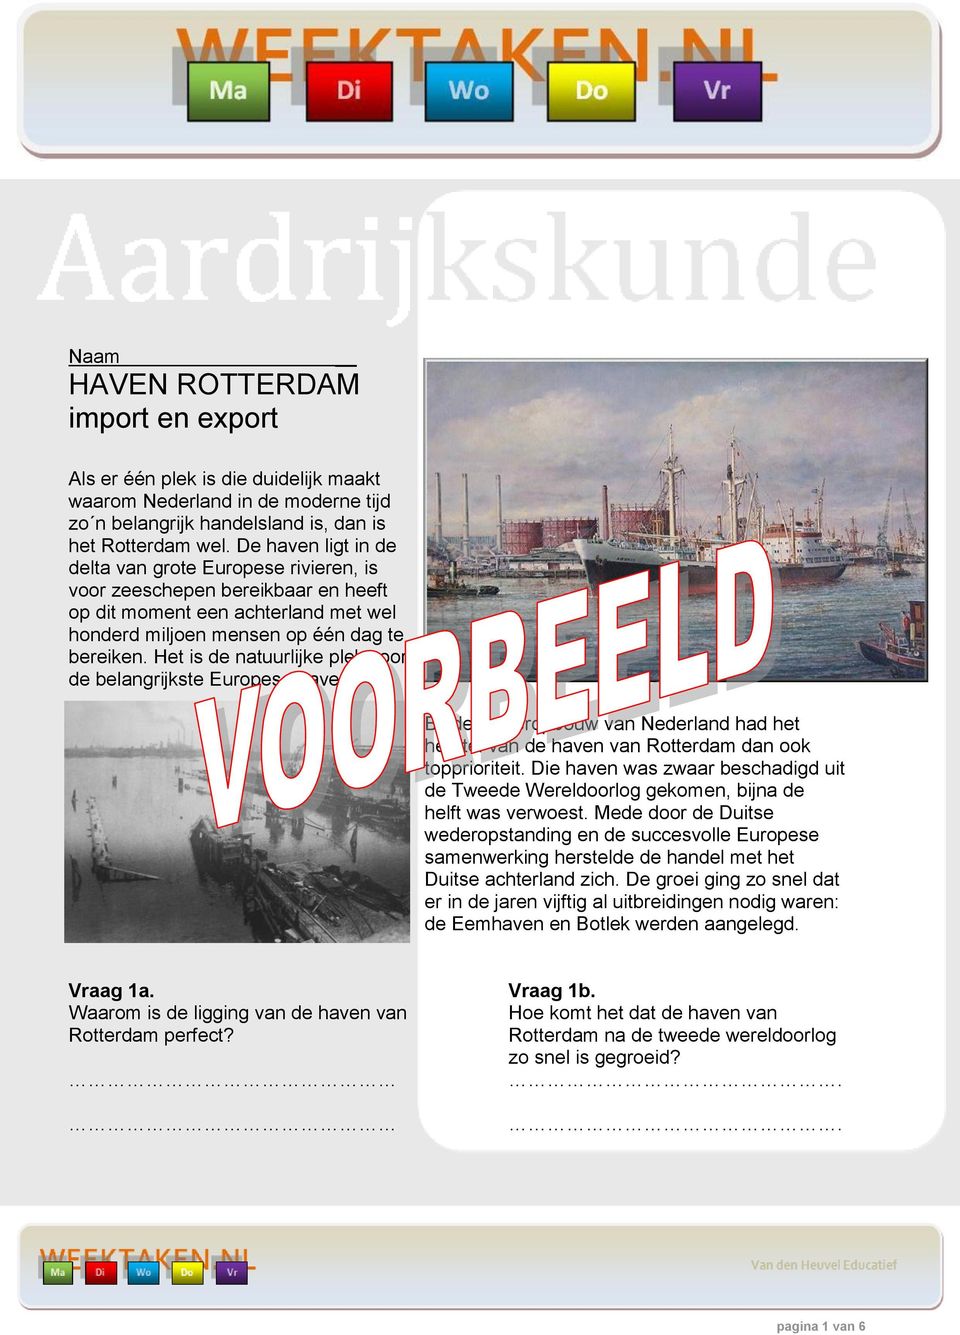 Het is de natuurlijke plek voor de belangrijkste Europese haven. Bij de wederopbouw van Nederland had het herstel van de haven van Rotterdam dan ook topprioriteit.